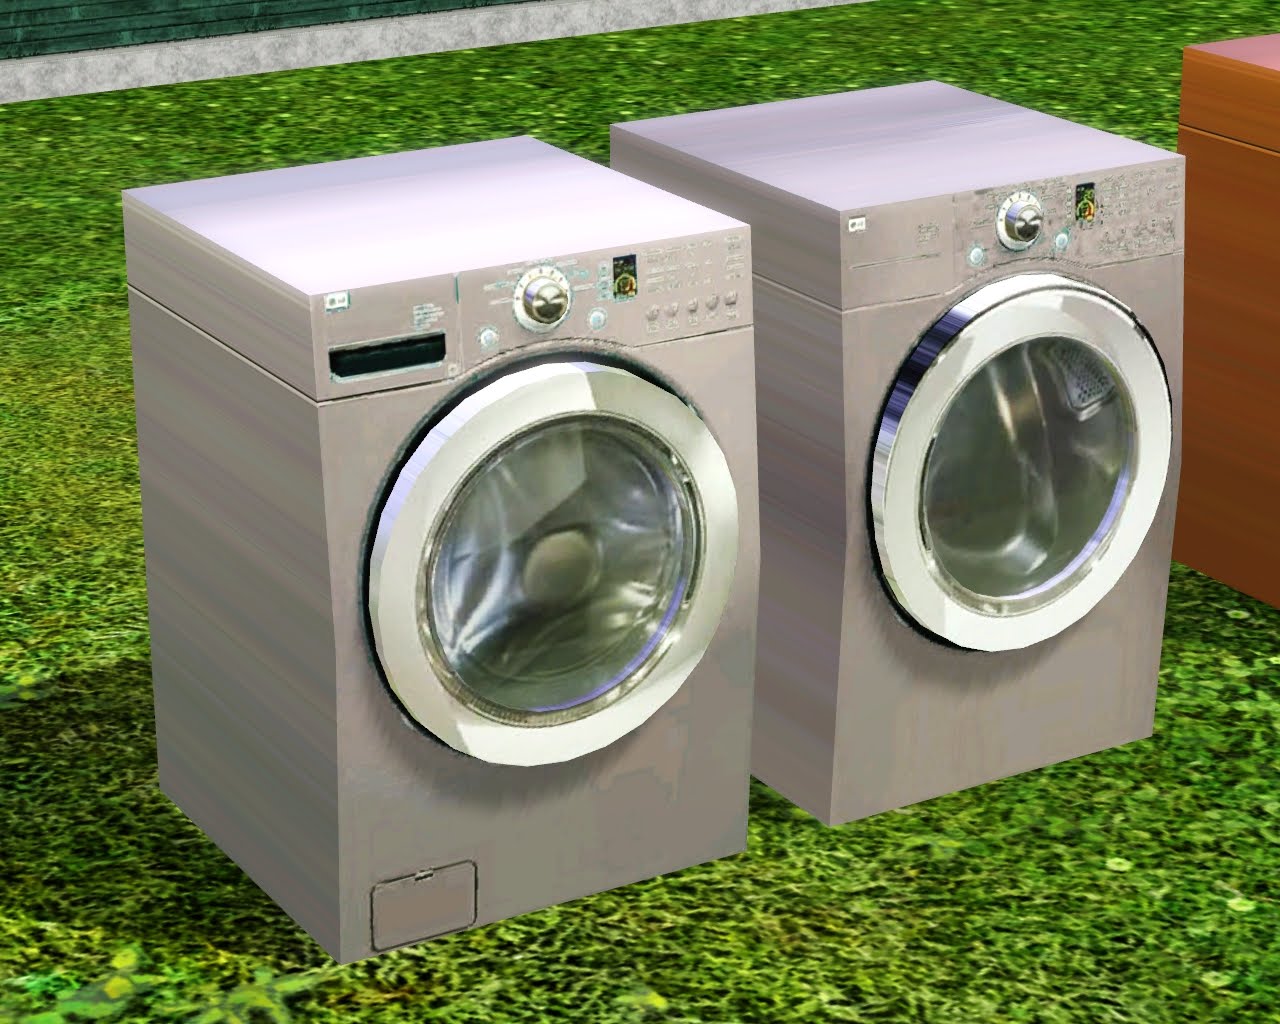 Купить будет стиральную машину. Симс 4 стиральная машина. Veko стиральная машинка зеленая. SIMS 4 стиральная машина мод. Стиральная машина цветная.